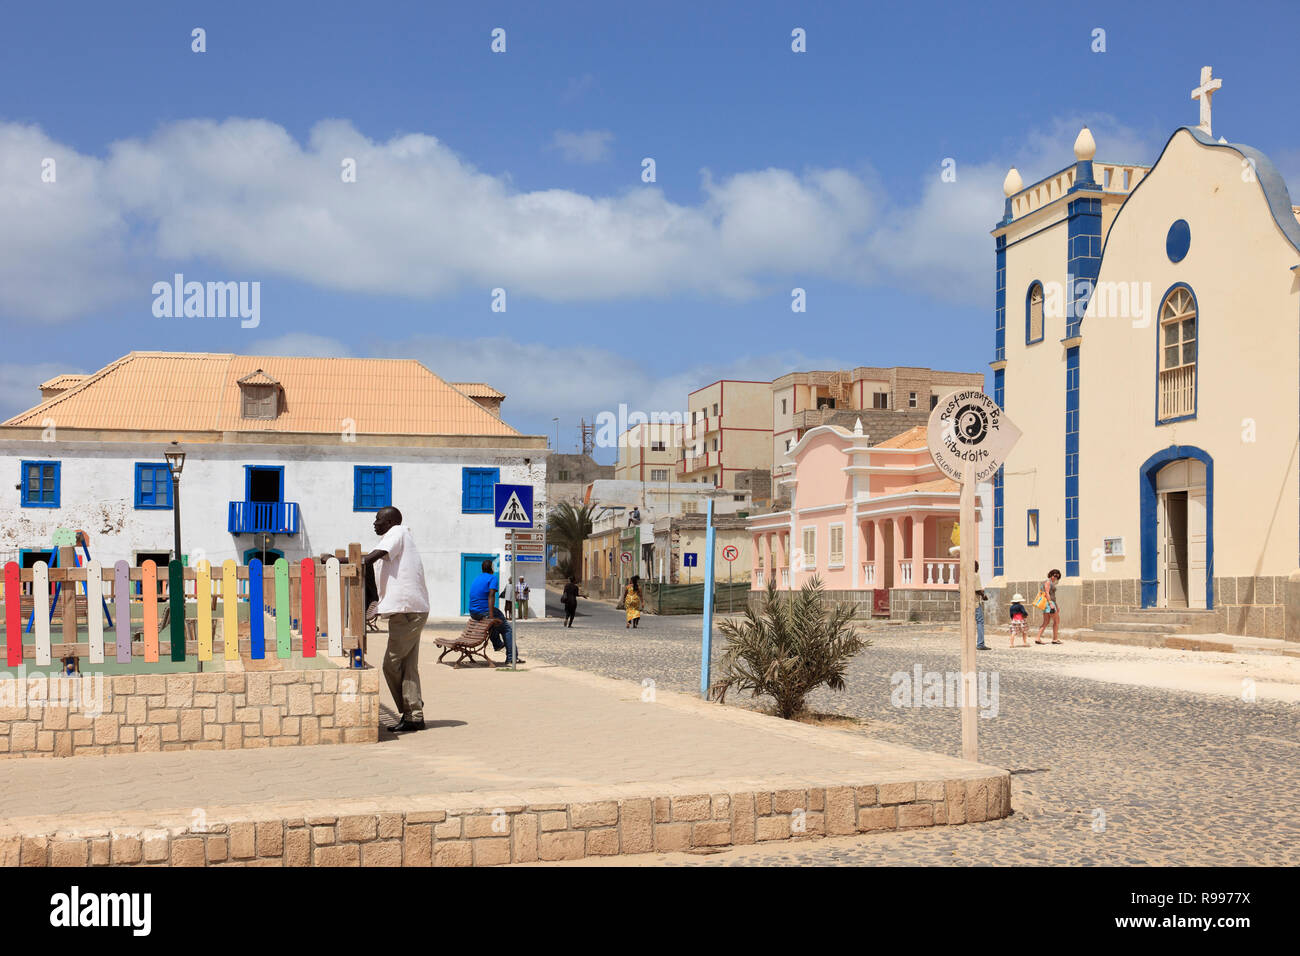 Szene in der Hauptplatz mit gepflasterten Straße und die katholische Kirche des Hl. Isobel. Largo Santa Isobel, Sal Rei, Boa Vista, Kap Verde Inseln, Afrika Stockfoto